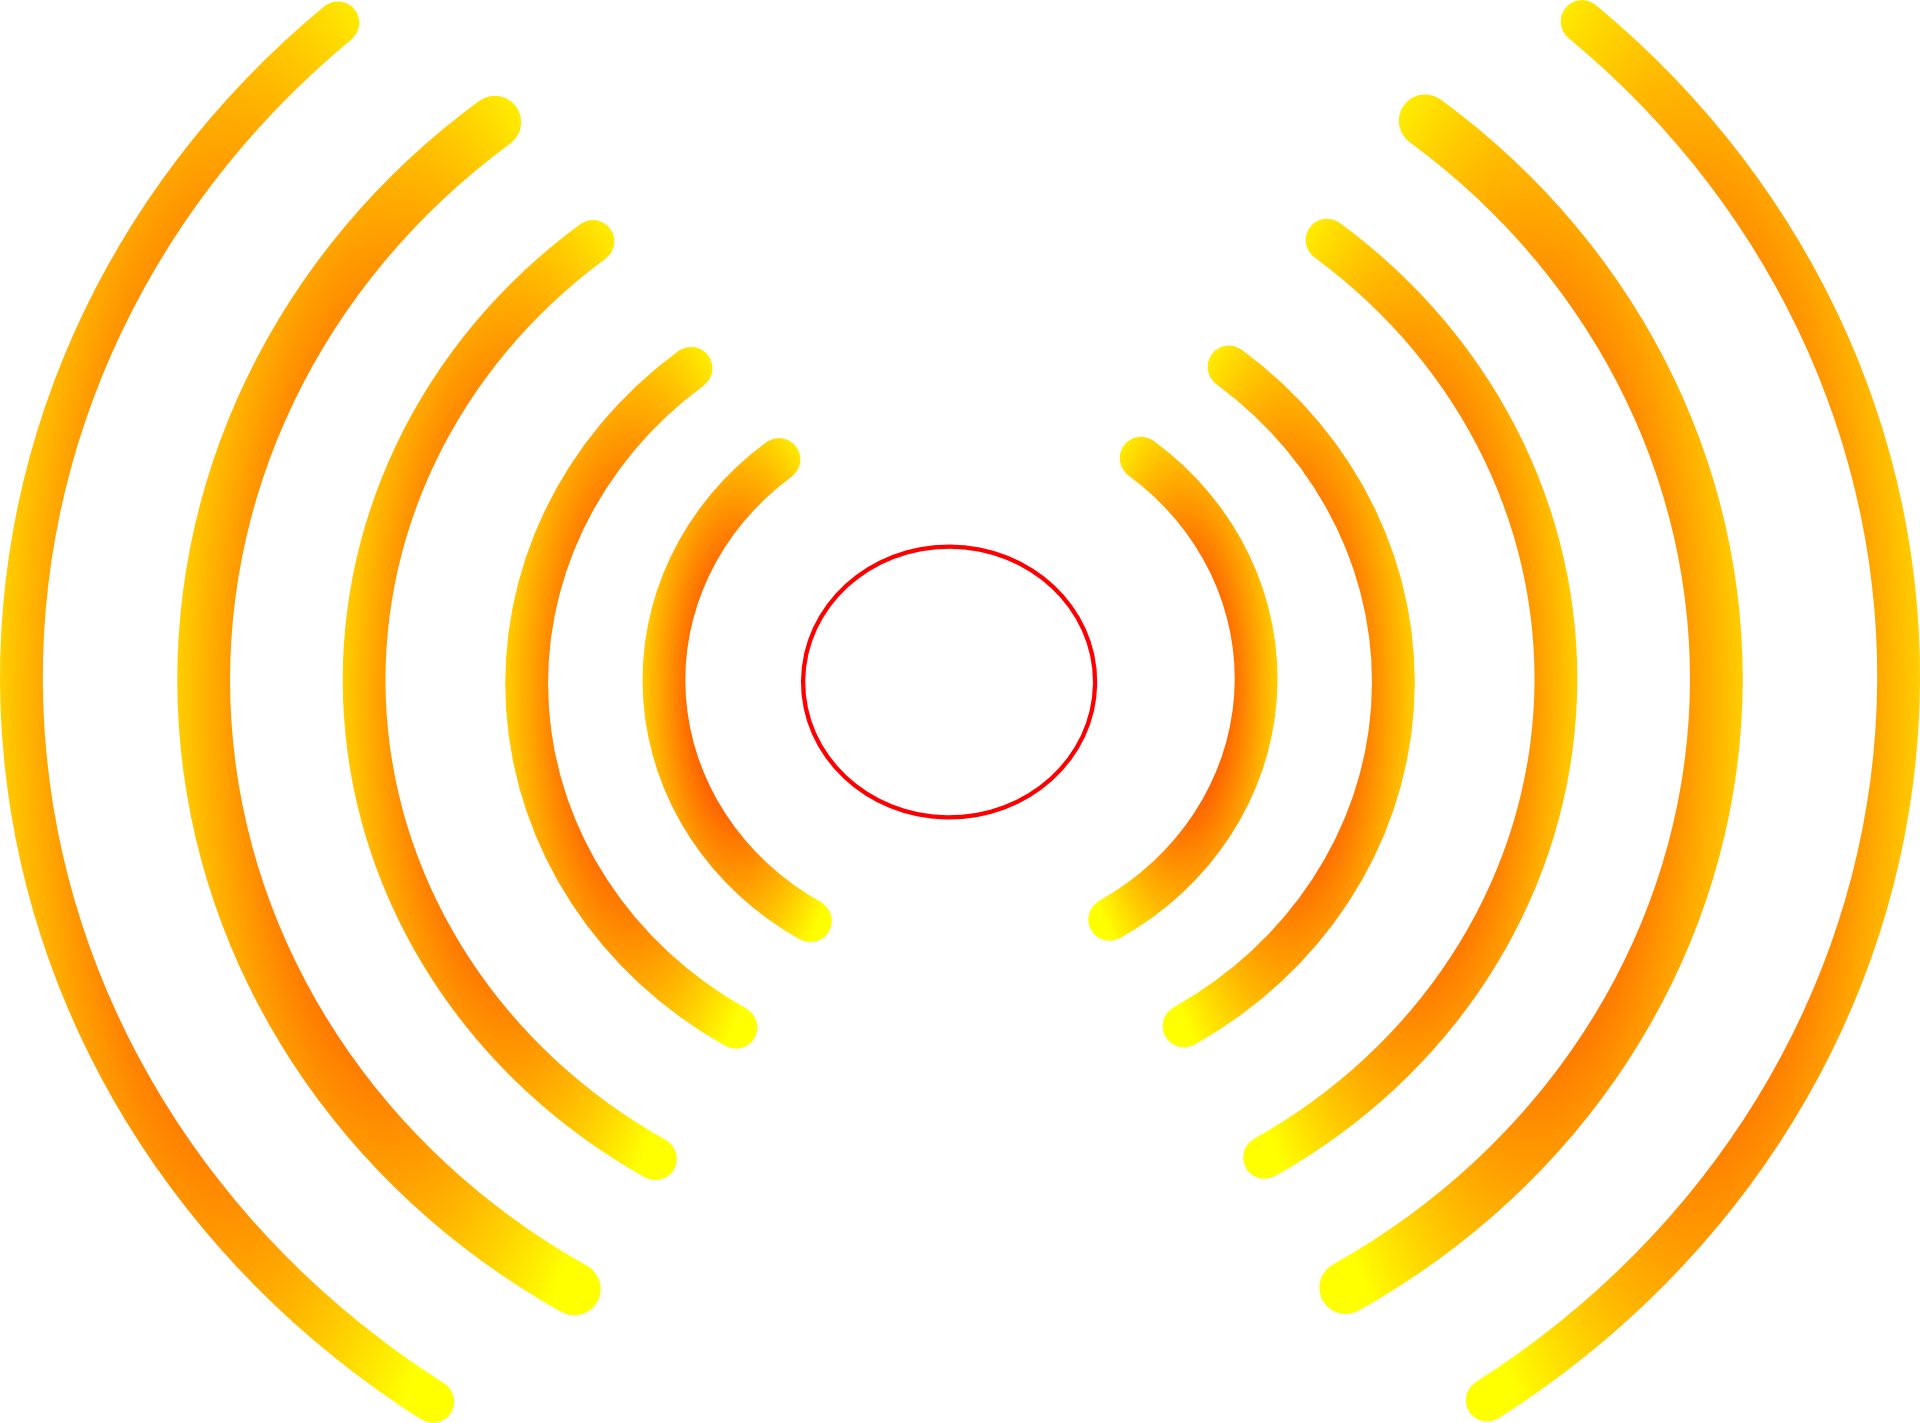 Radio broadcast symbol